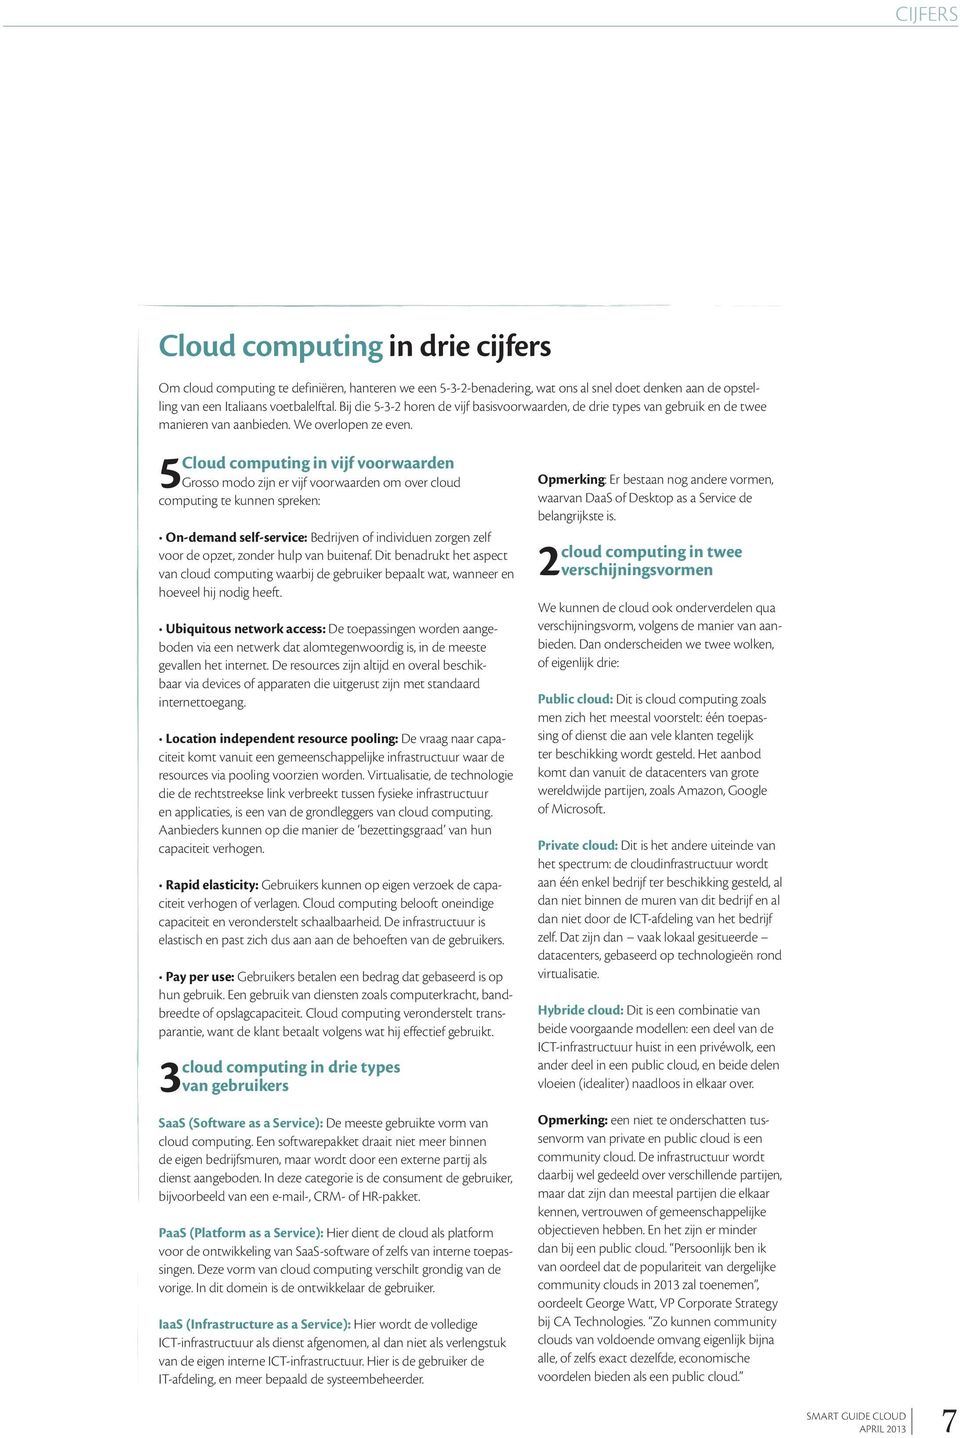 5Cloud computing in vijf voorwaarden Grosso modo zijn er vijf voorwaarden om over cloud computing te kunnen spreken: On-demand self-service: Bedrijven of individuen zorgen zelf voor de opzet, zonder